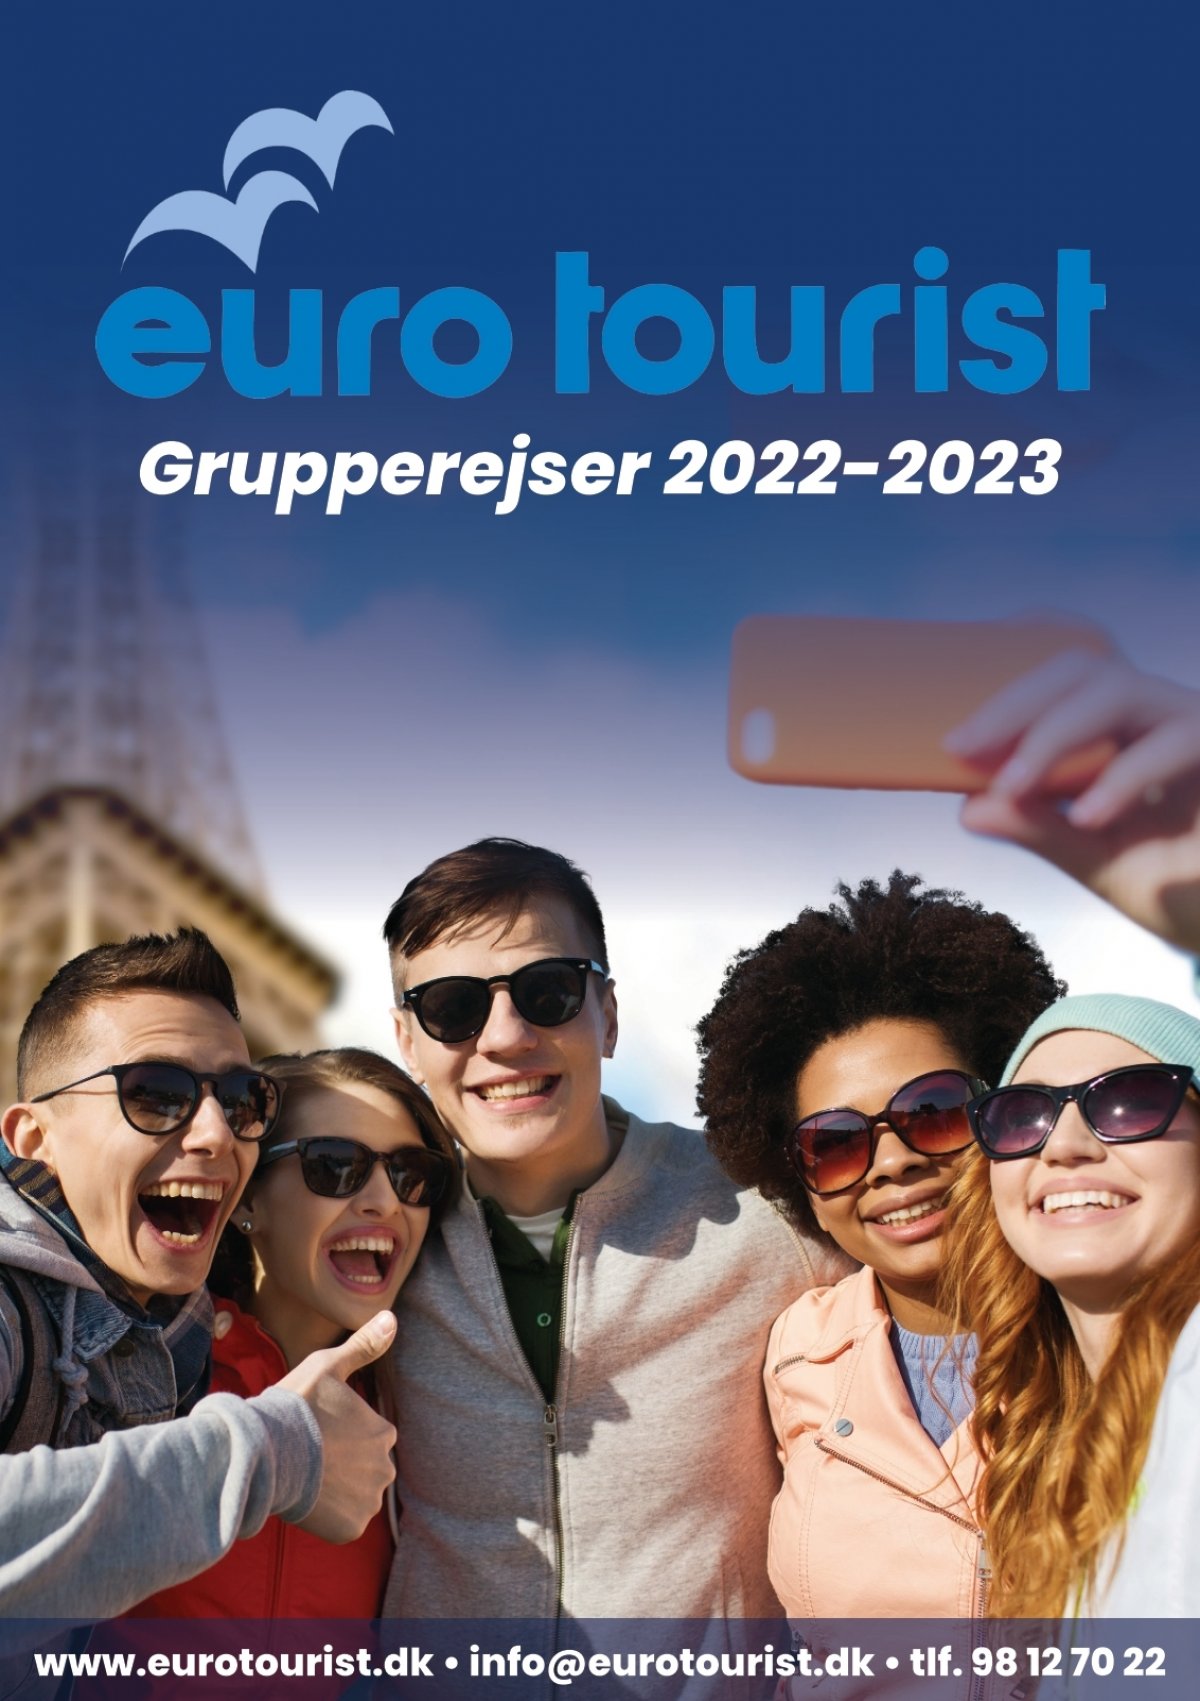 euro tourist gv sk